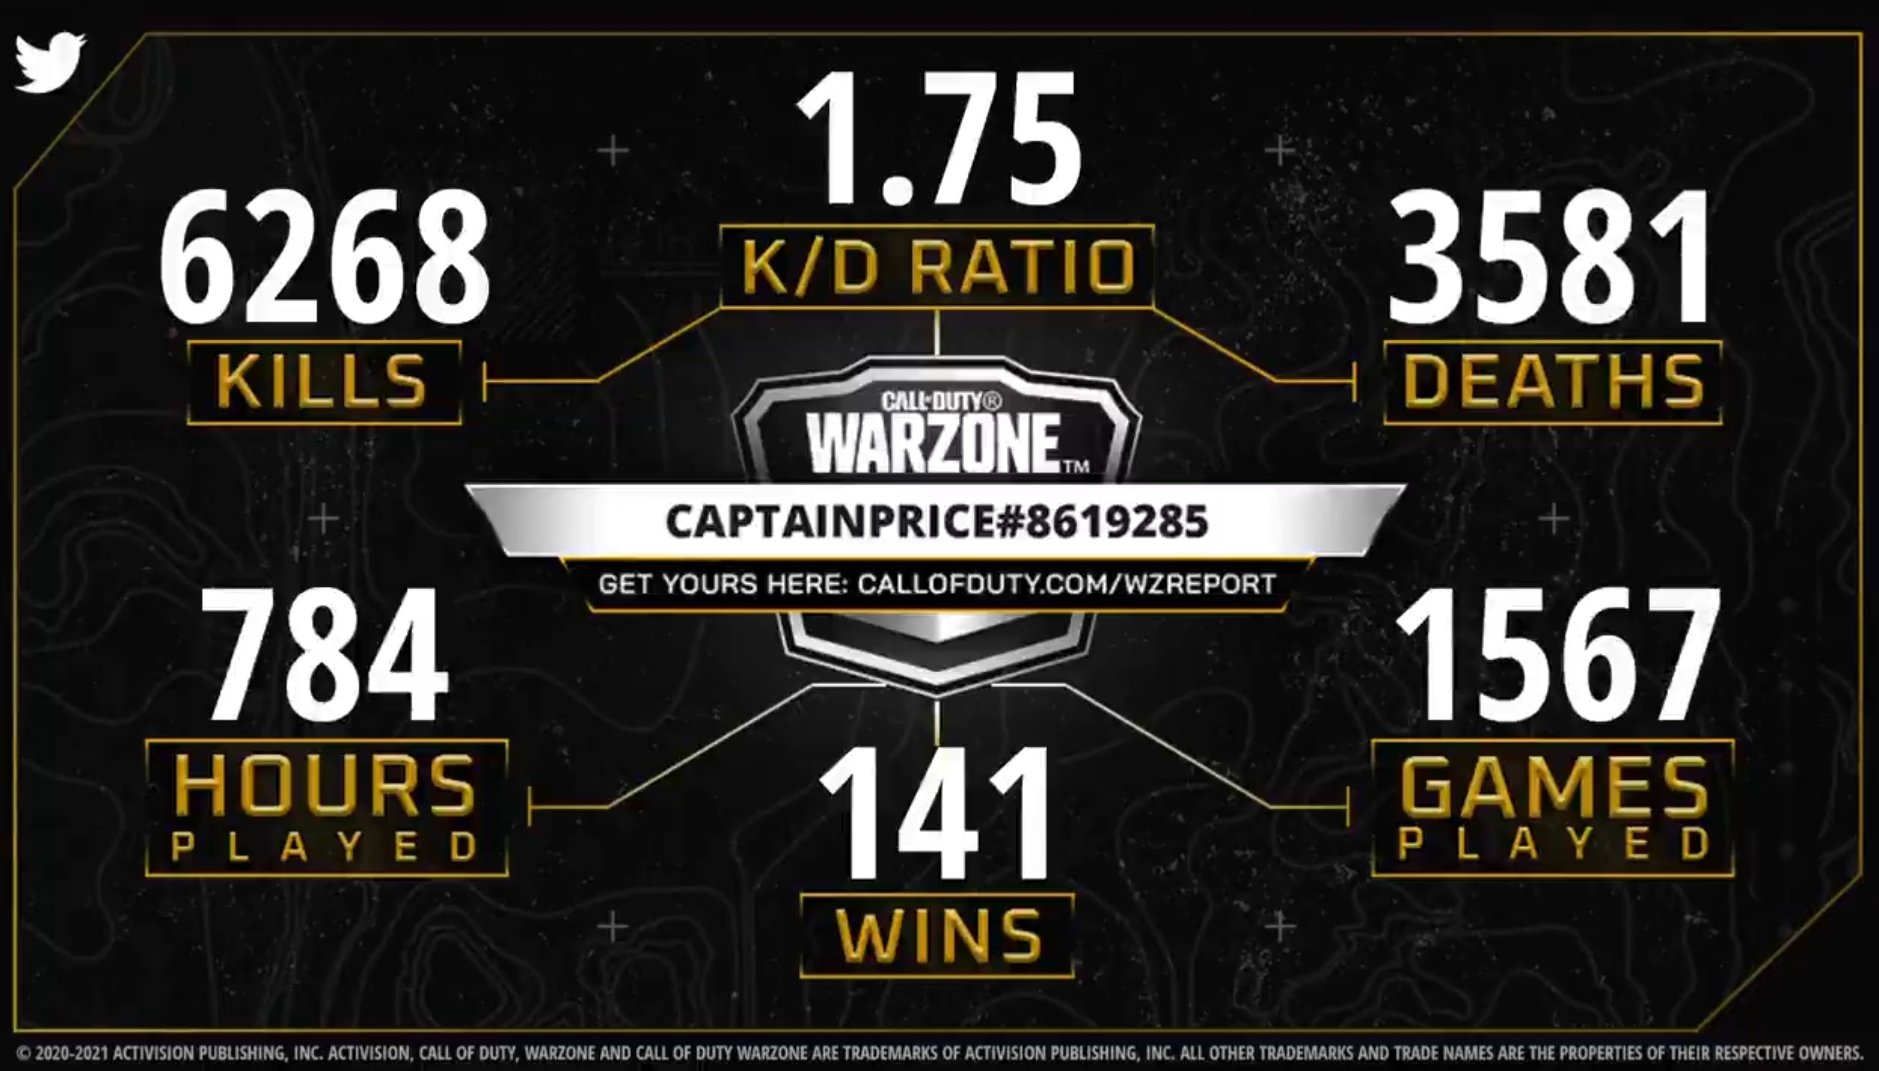 Com a ferramenta Warzone Report é possível visualizar suas estatísticas no game Call of Duty Warzone